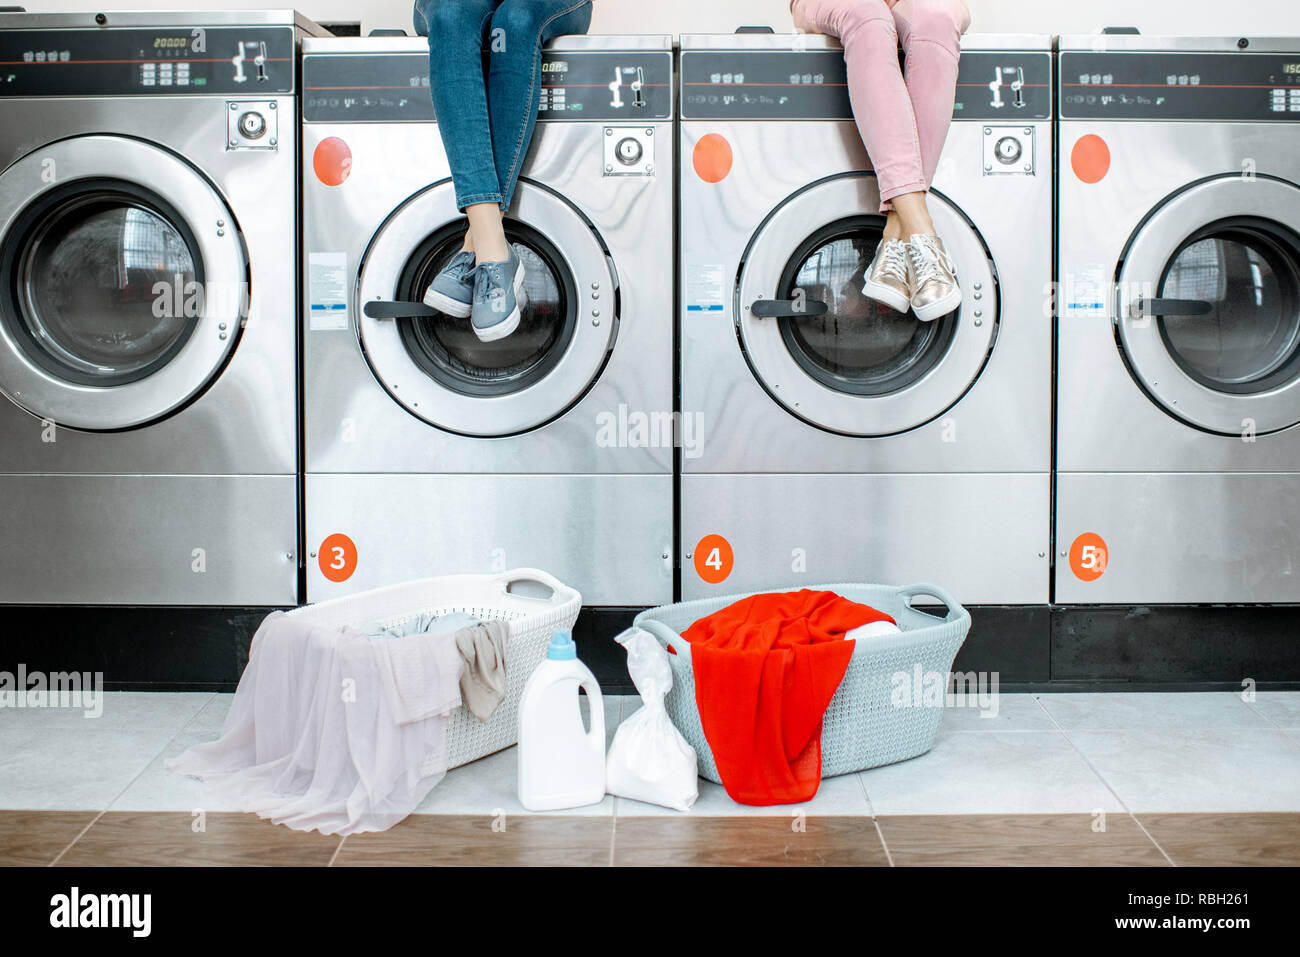 Donna seduta su macchine di lavaggio in attesa di lavaggio al servizio di lavanderia self-service con ceste piene di vestiti. Immagine ritagliata con nessun volto Foto Stock